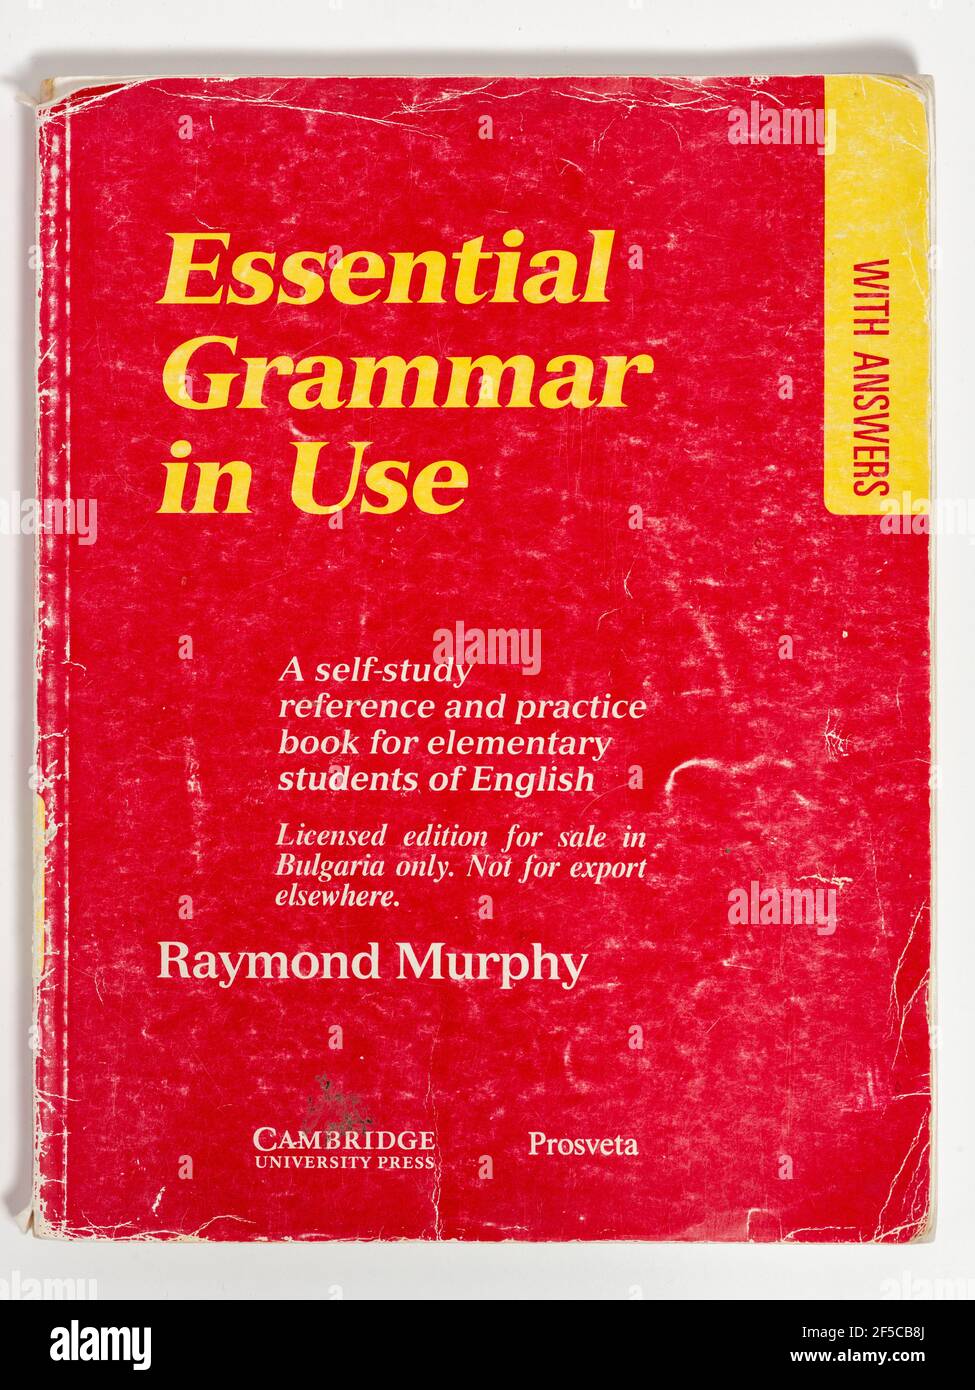 Essential Grammar in Use by Raymond Murphy Taschenbuch Cover showing Wear, Cambridge University Press 1990, herausgegeben für Bulgarien. Stockfoto